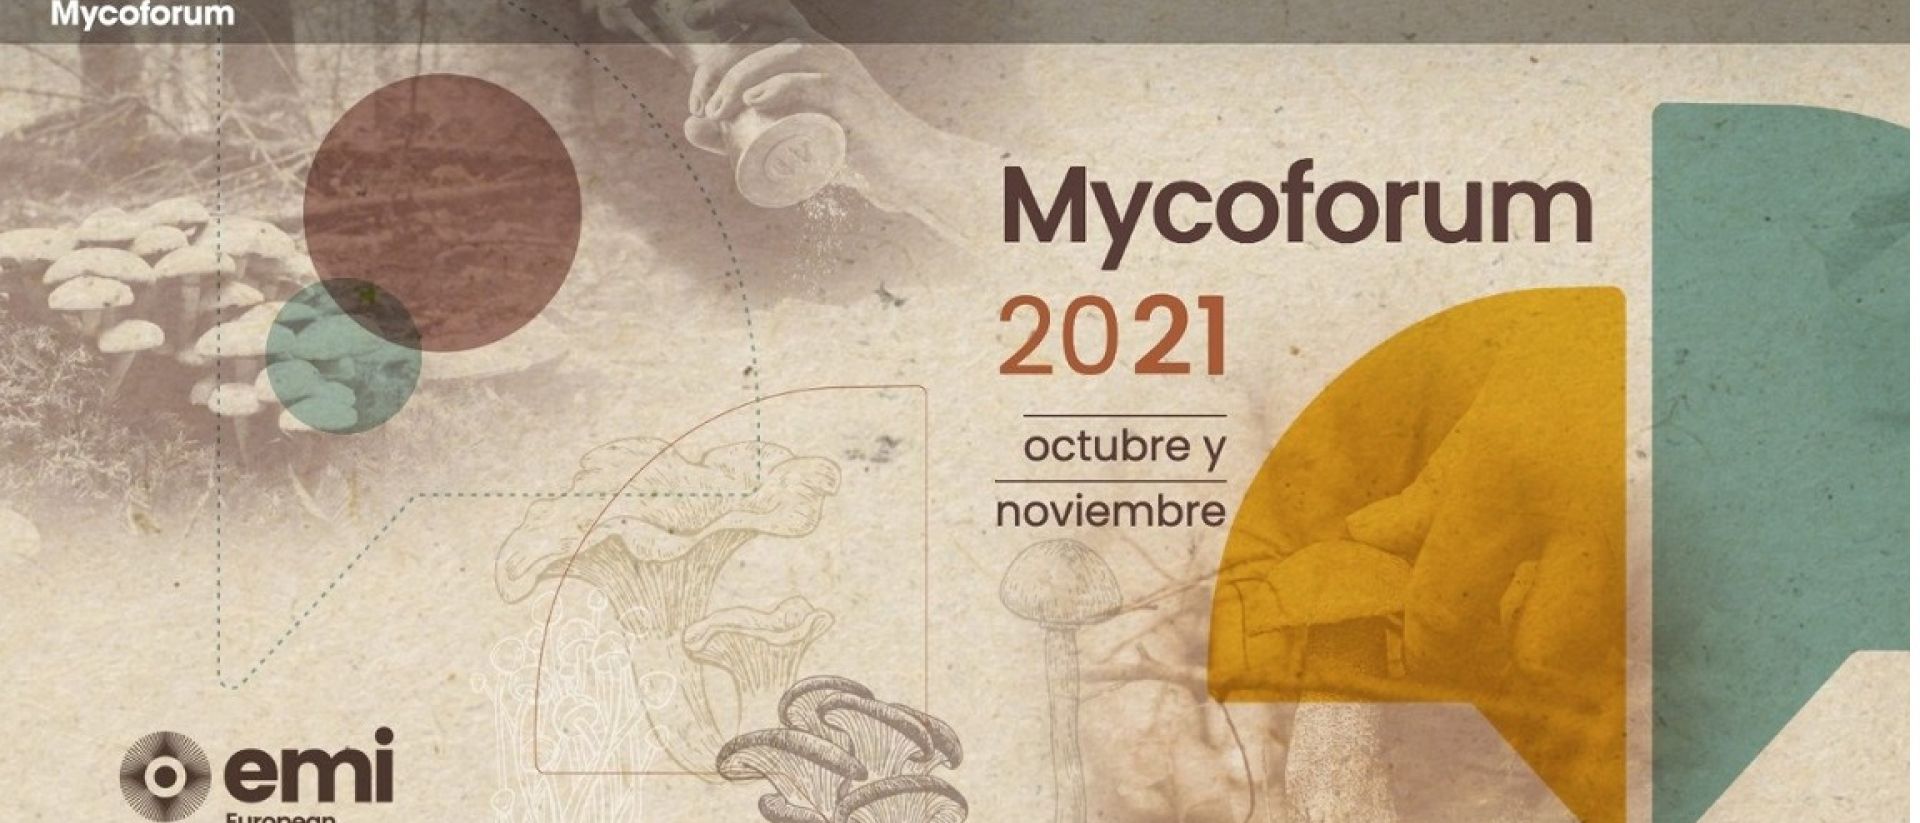 Ávila reçoit une activité pour promouvoir l’entrepreneuriat mycologique et l’innovation